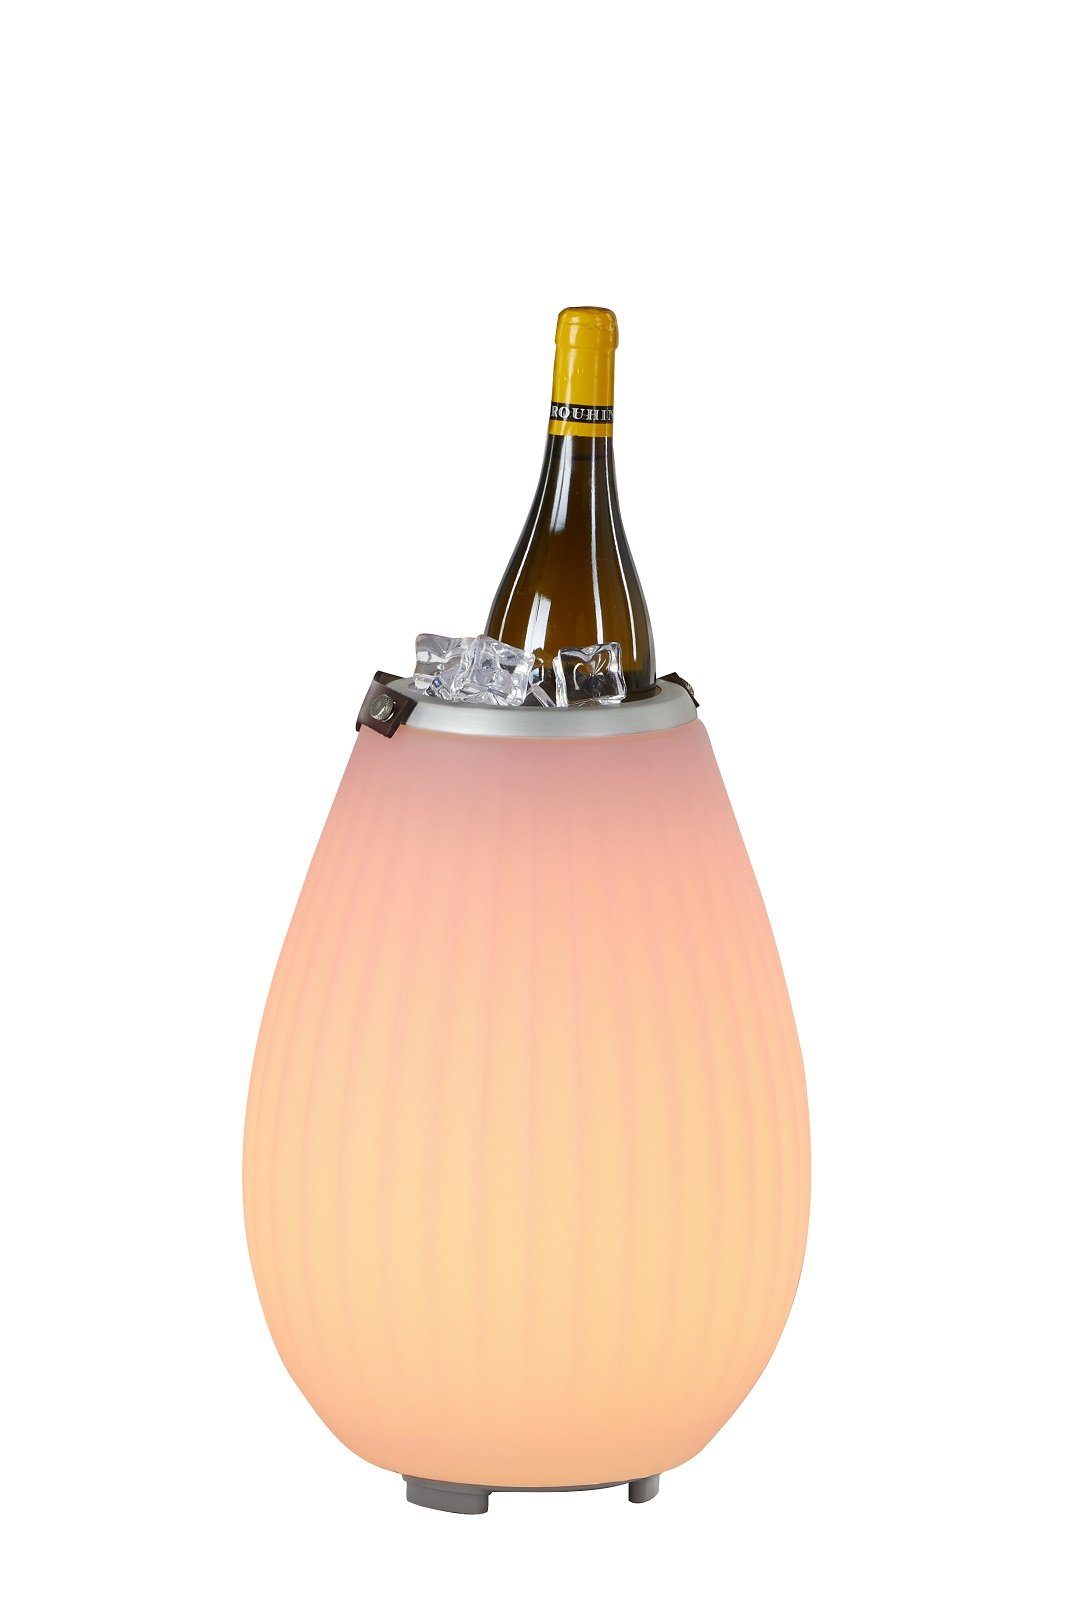 Joouls Weinkühler 3in1 LED beleuchtet mit Bluetooth Lautsprecher JOOULY 35, Ø25x39cm